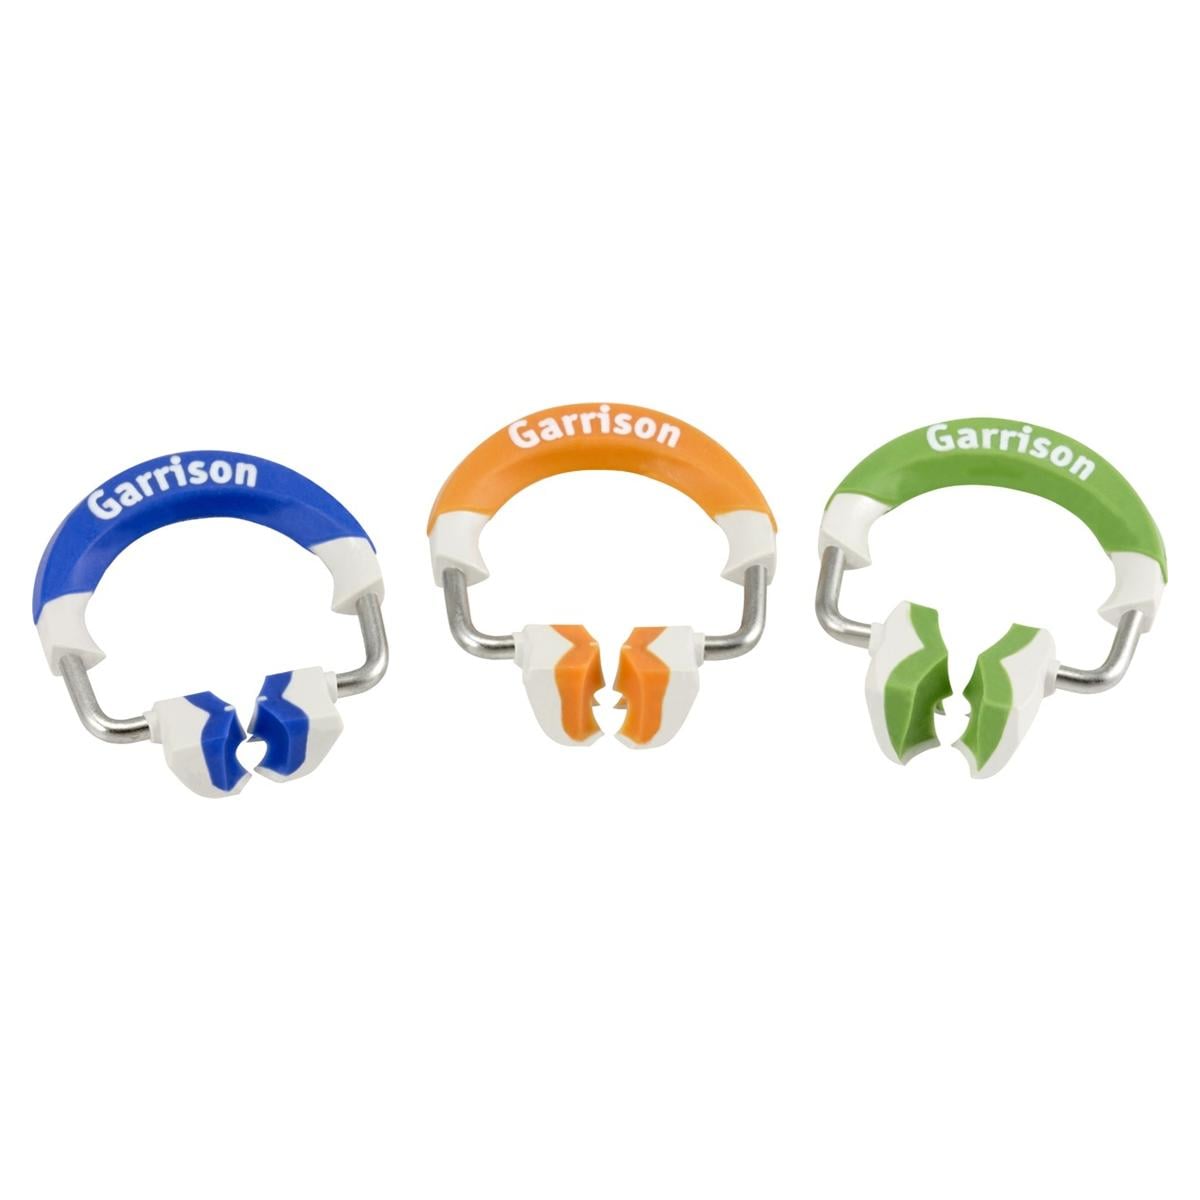 Composi-Tight 3D Fusion Ring - set de 3 anneaux - Anneaux, kit - FXR01Contient 3 anneaux 3D Fusion, 1 de chaque bleu, orange et